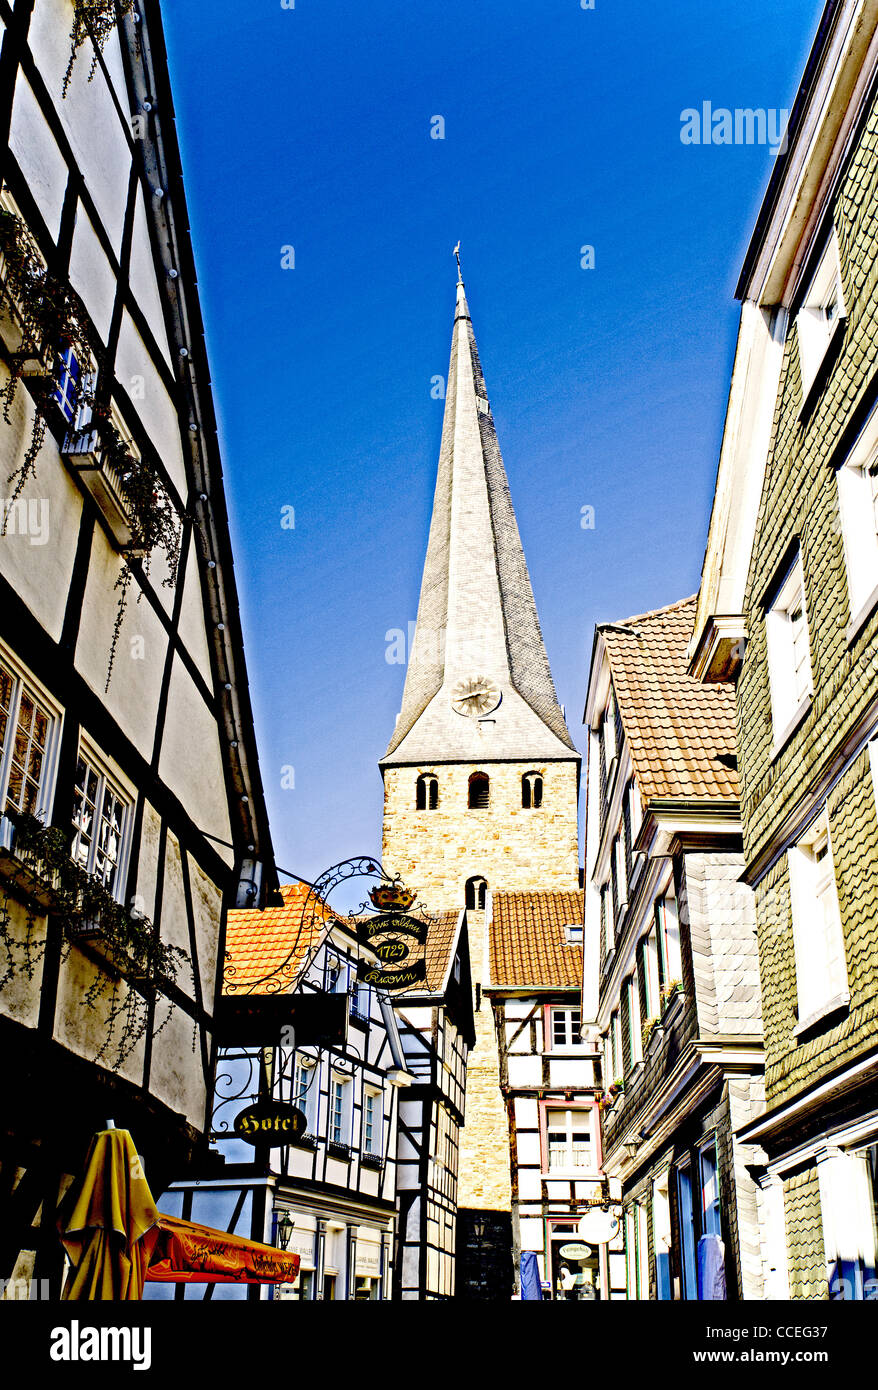 Mittelalterlicher Stadtkern von Hattingen, Nordrhein-Westfalen. Mediaeval Town Hattingen in North Rhine-Westphalia Stock Photo